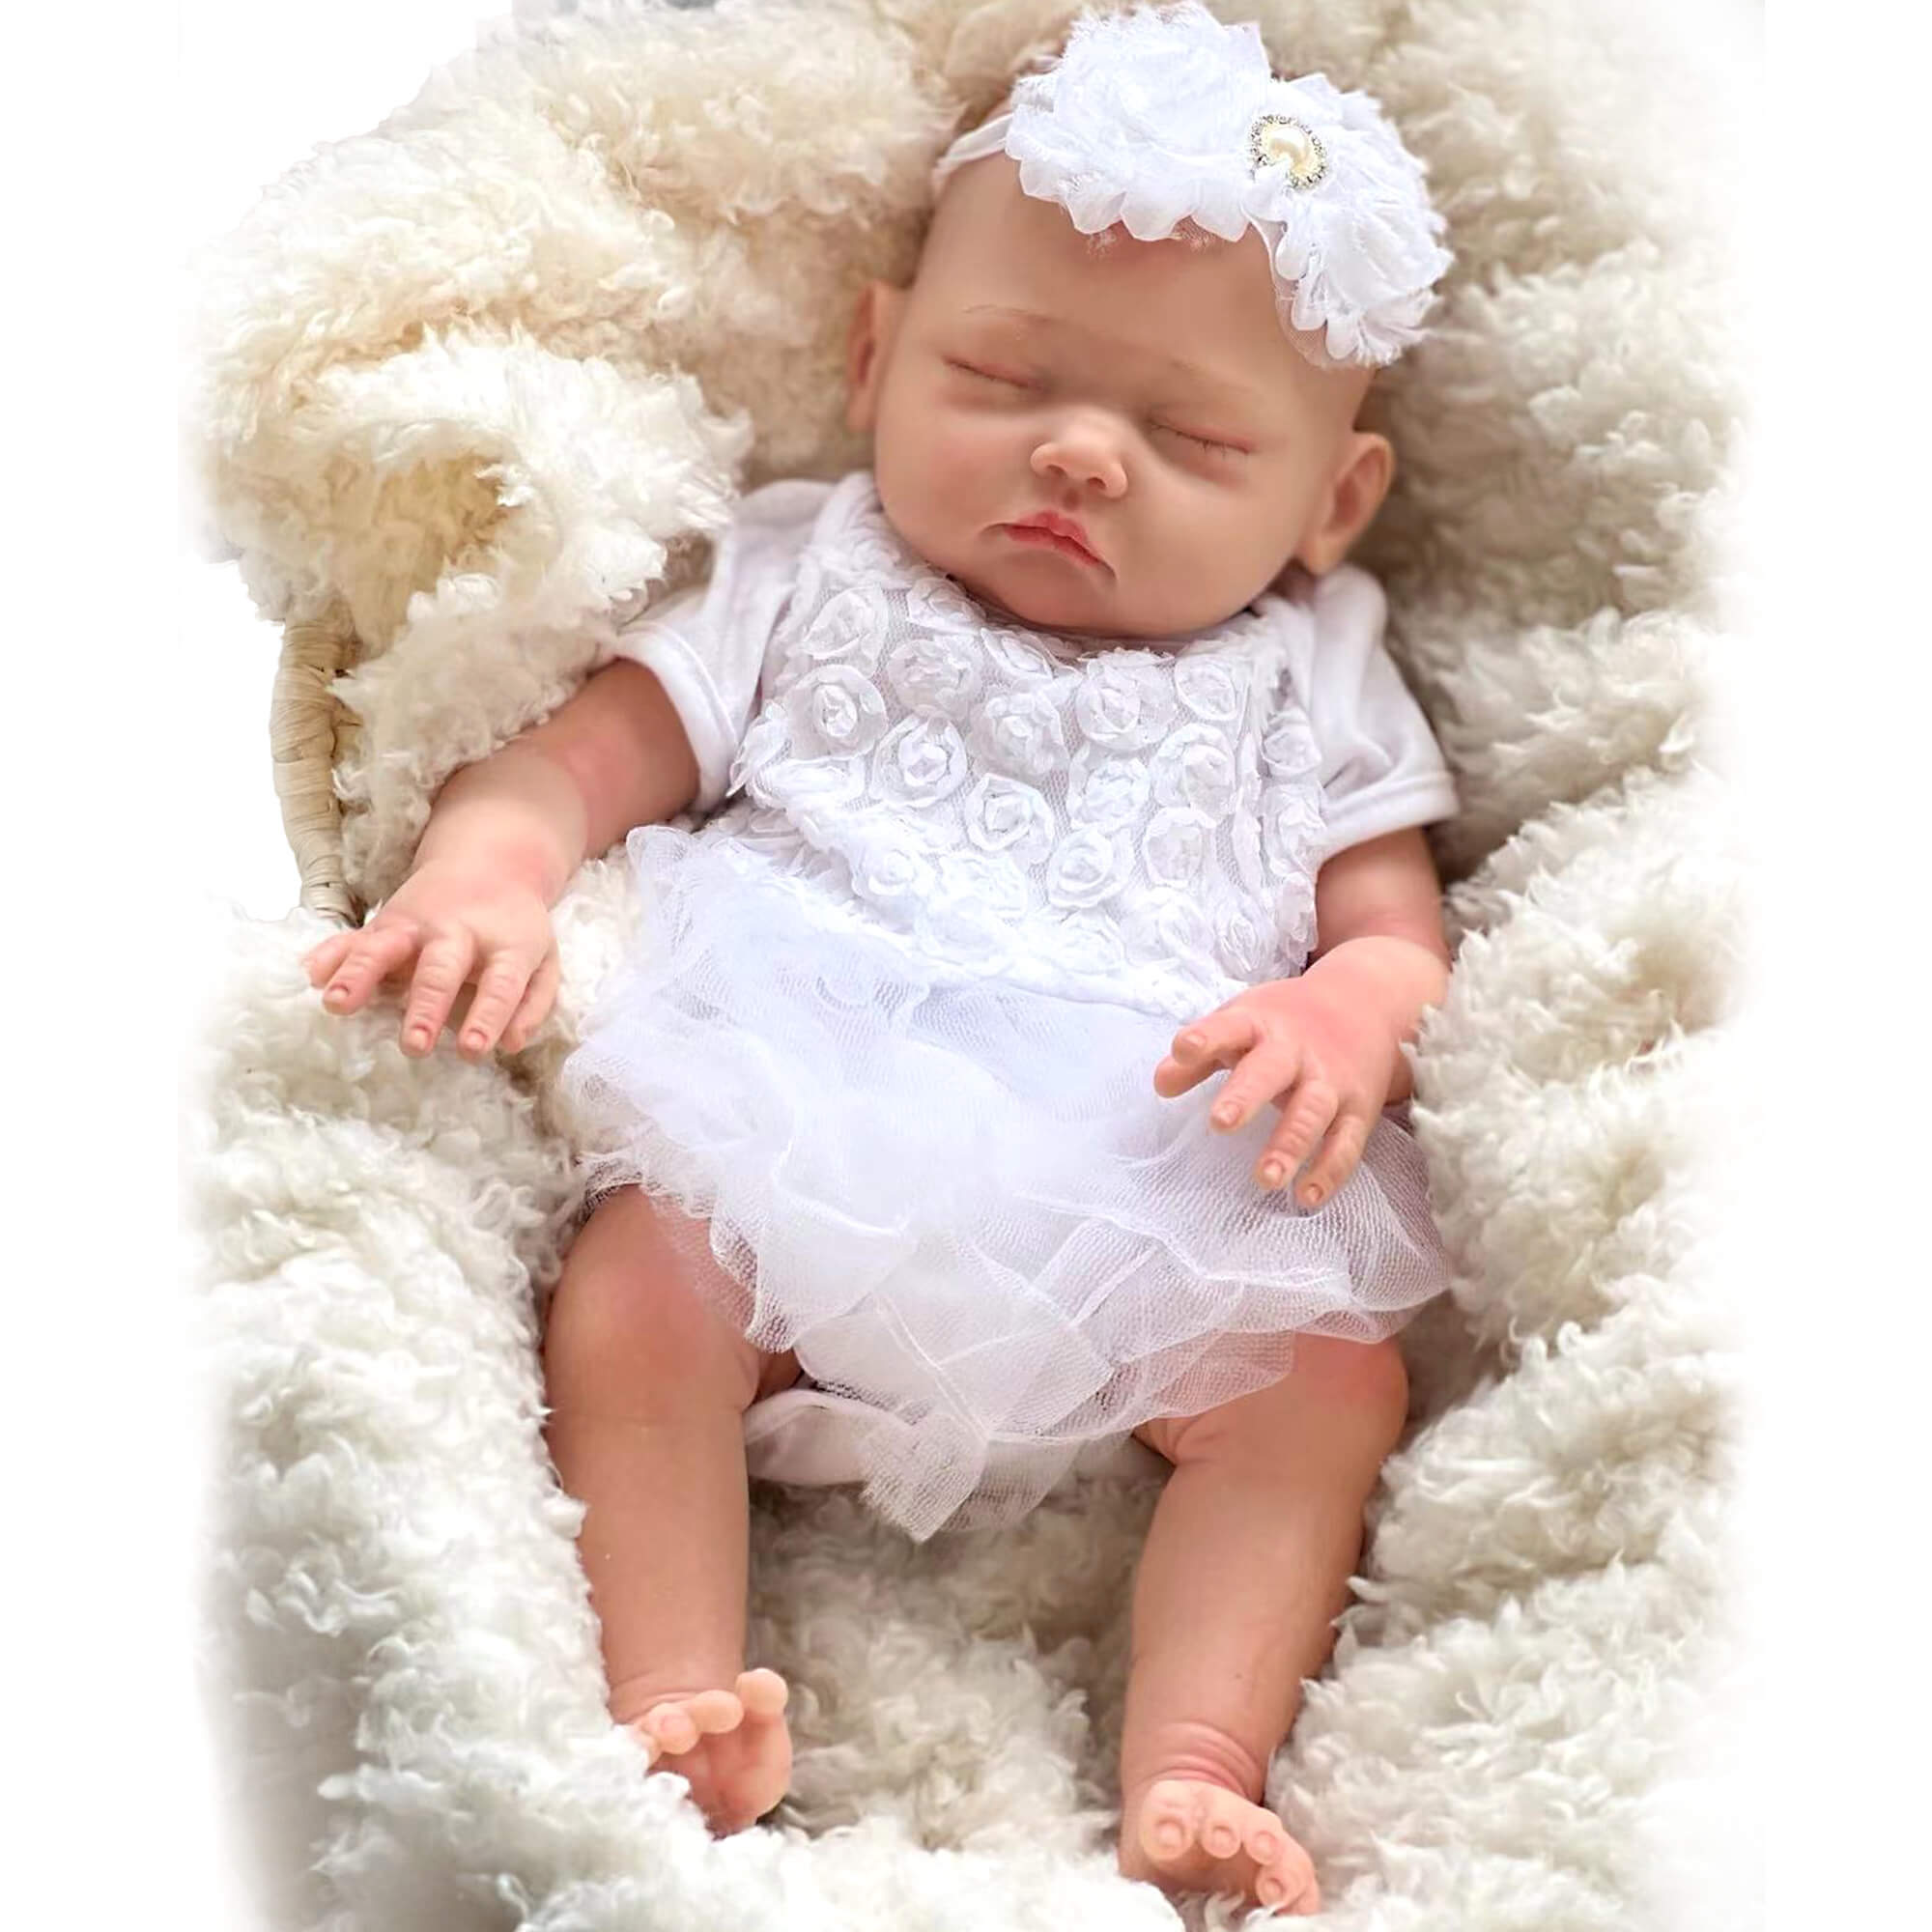 Sleeping Mini Reborn Baby Doll 6 inch 15cm Silicone Full Body